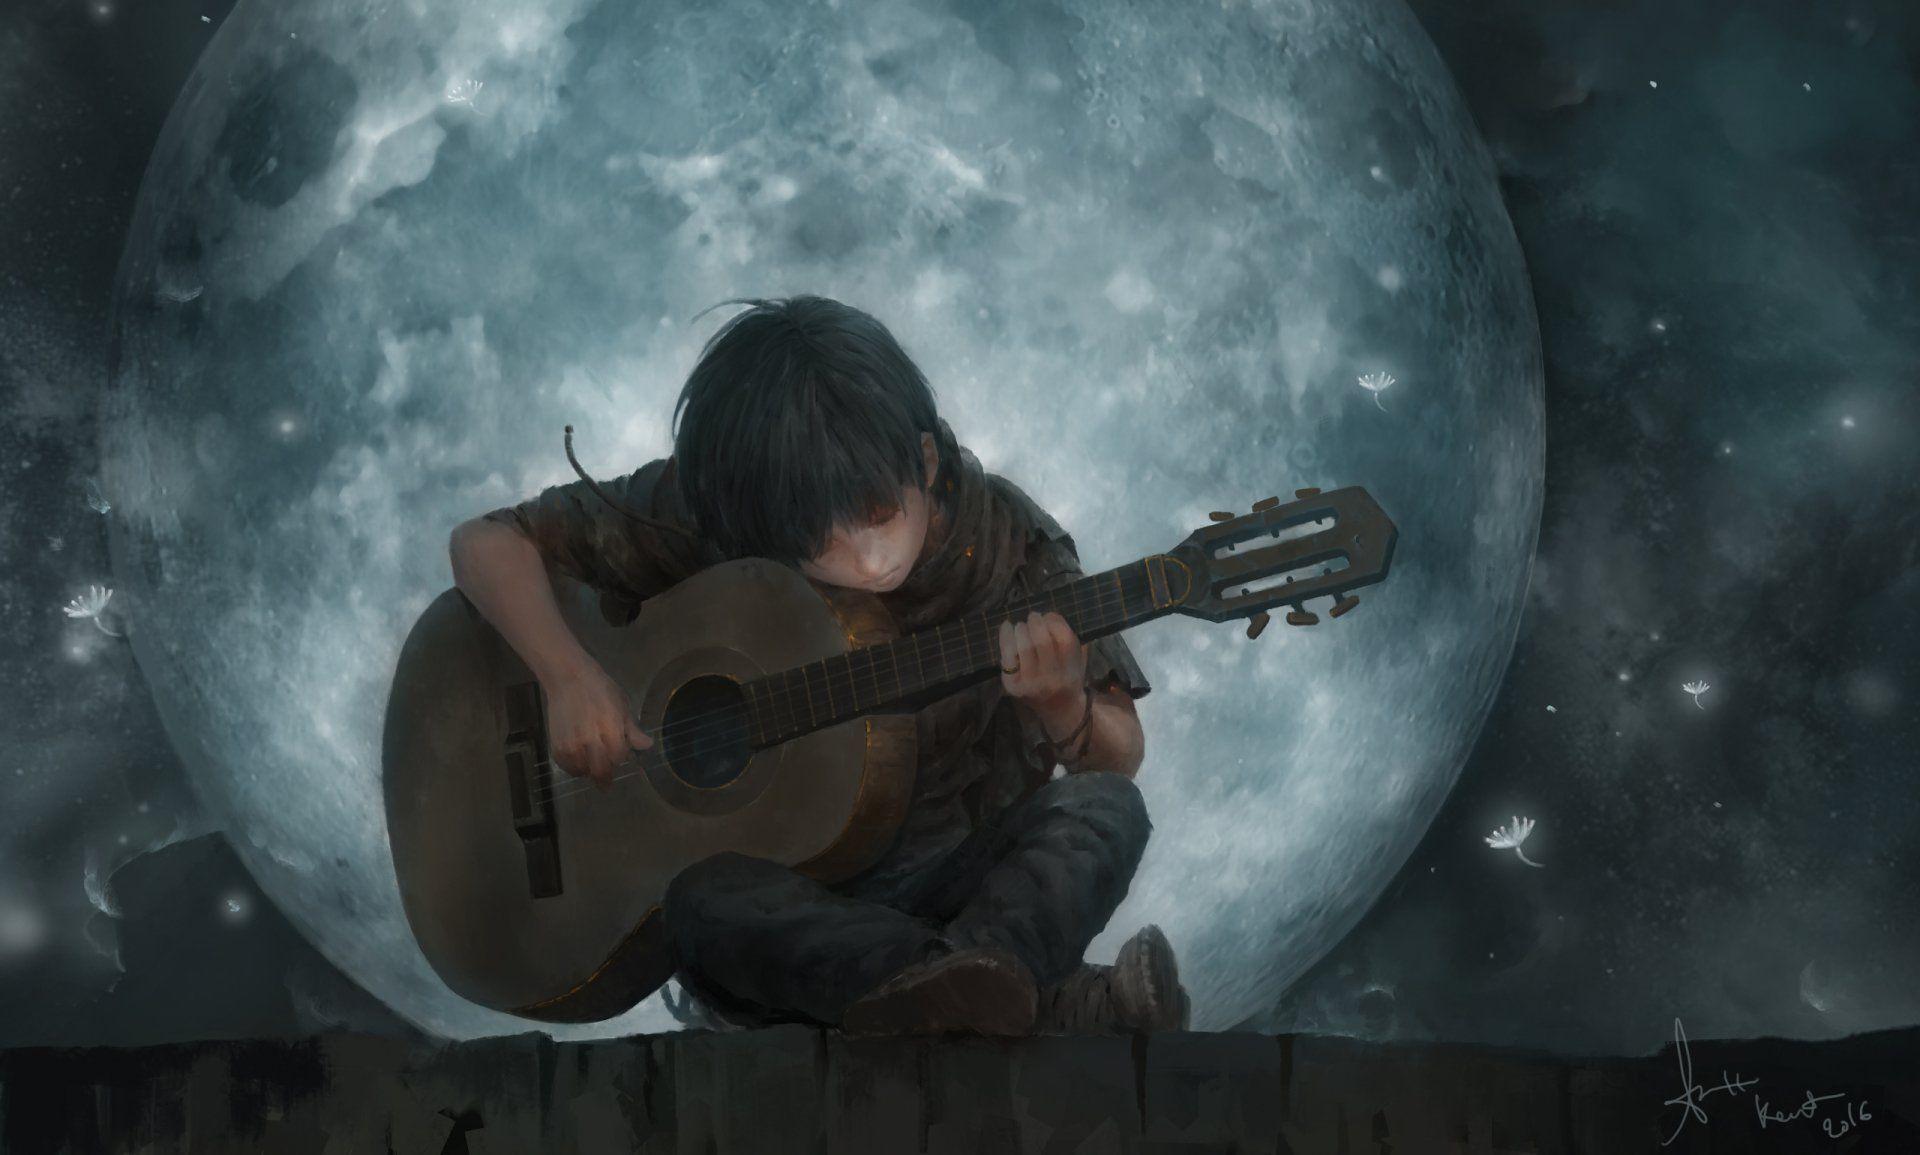 Artistic Child Moon Guitar Boy Wallpaper. Guitar art, Art